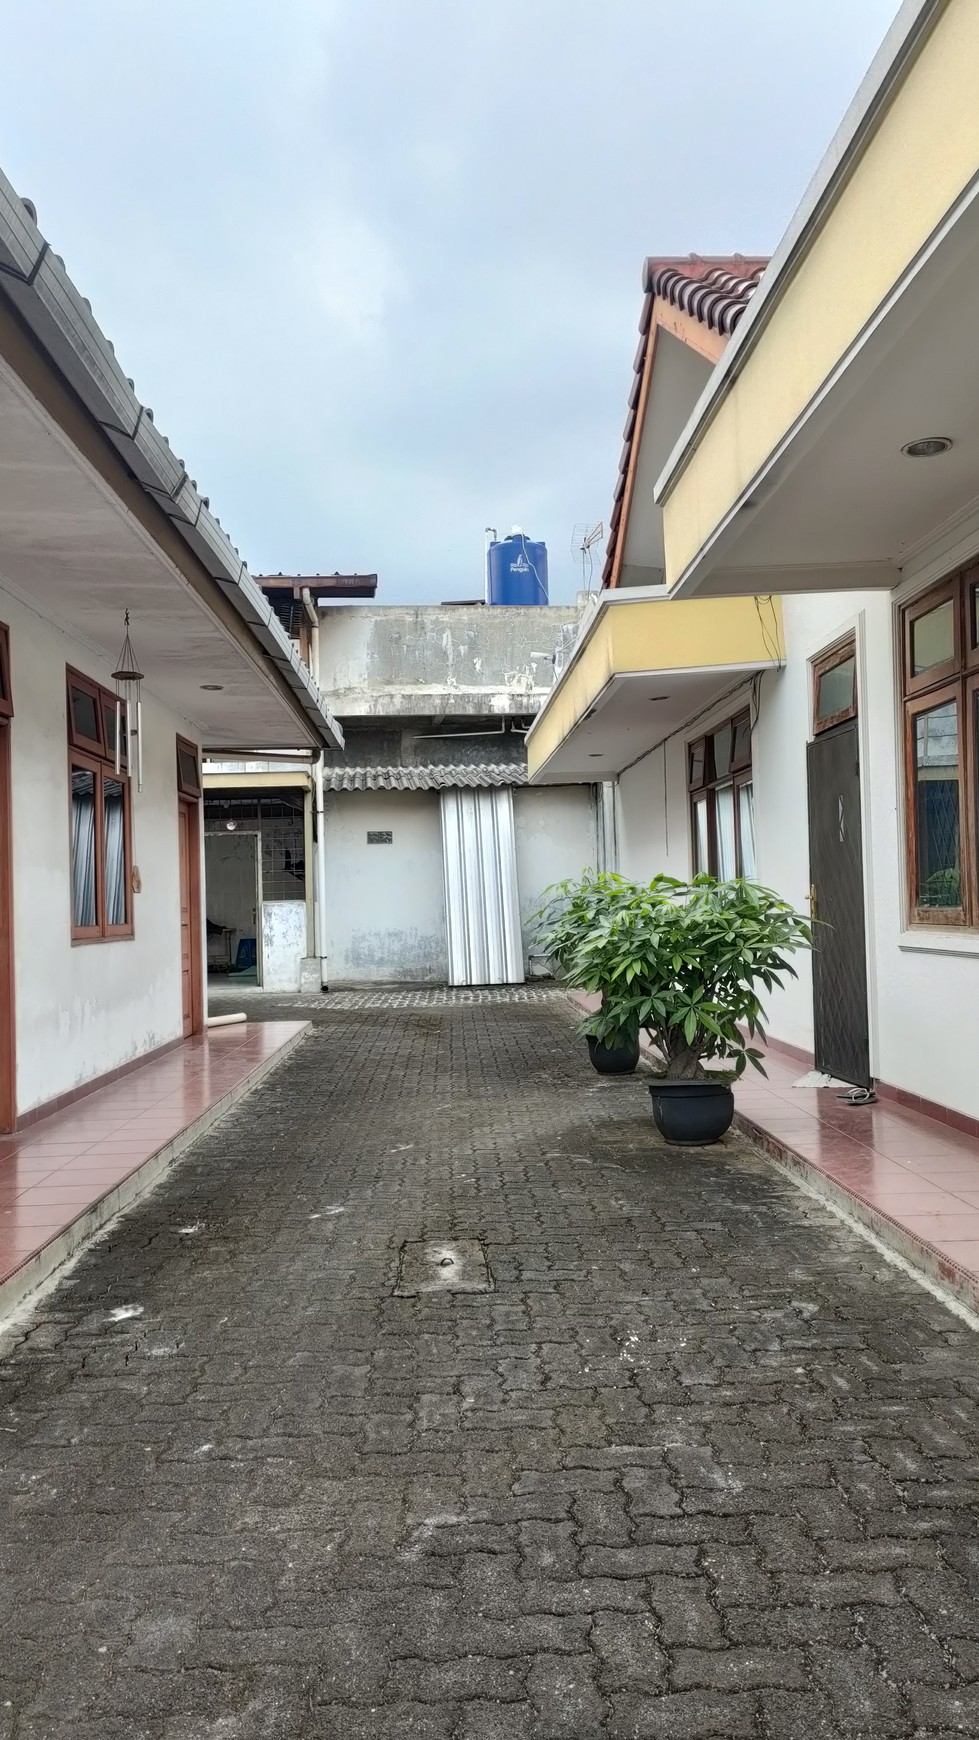 For Sale Rumah Luas dan Nyaman di Jakarta Barat